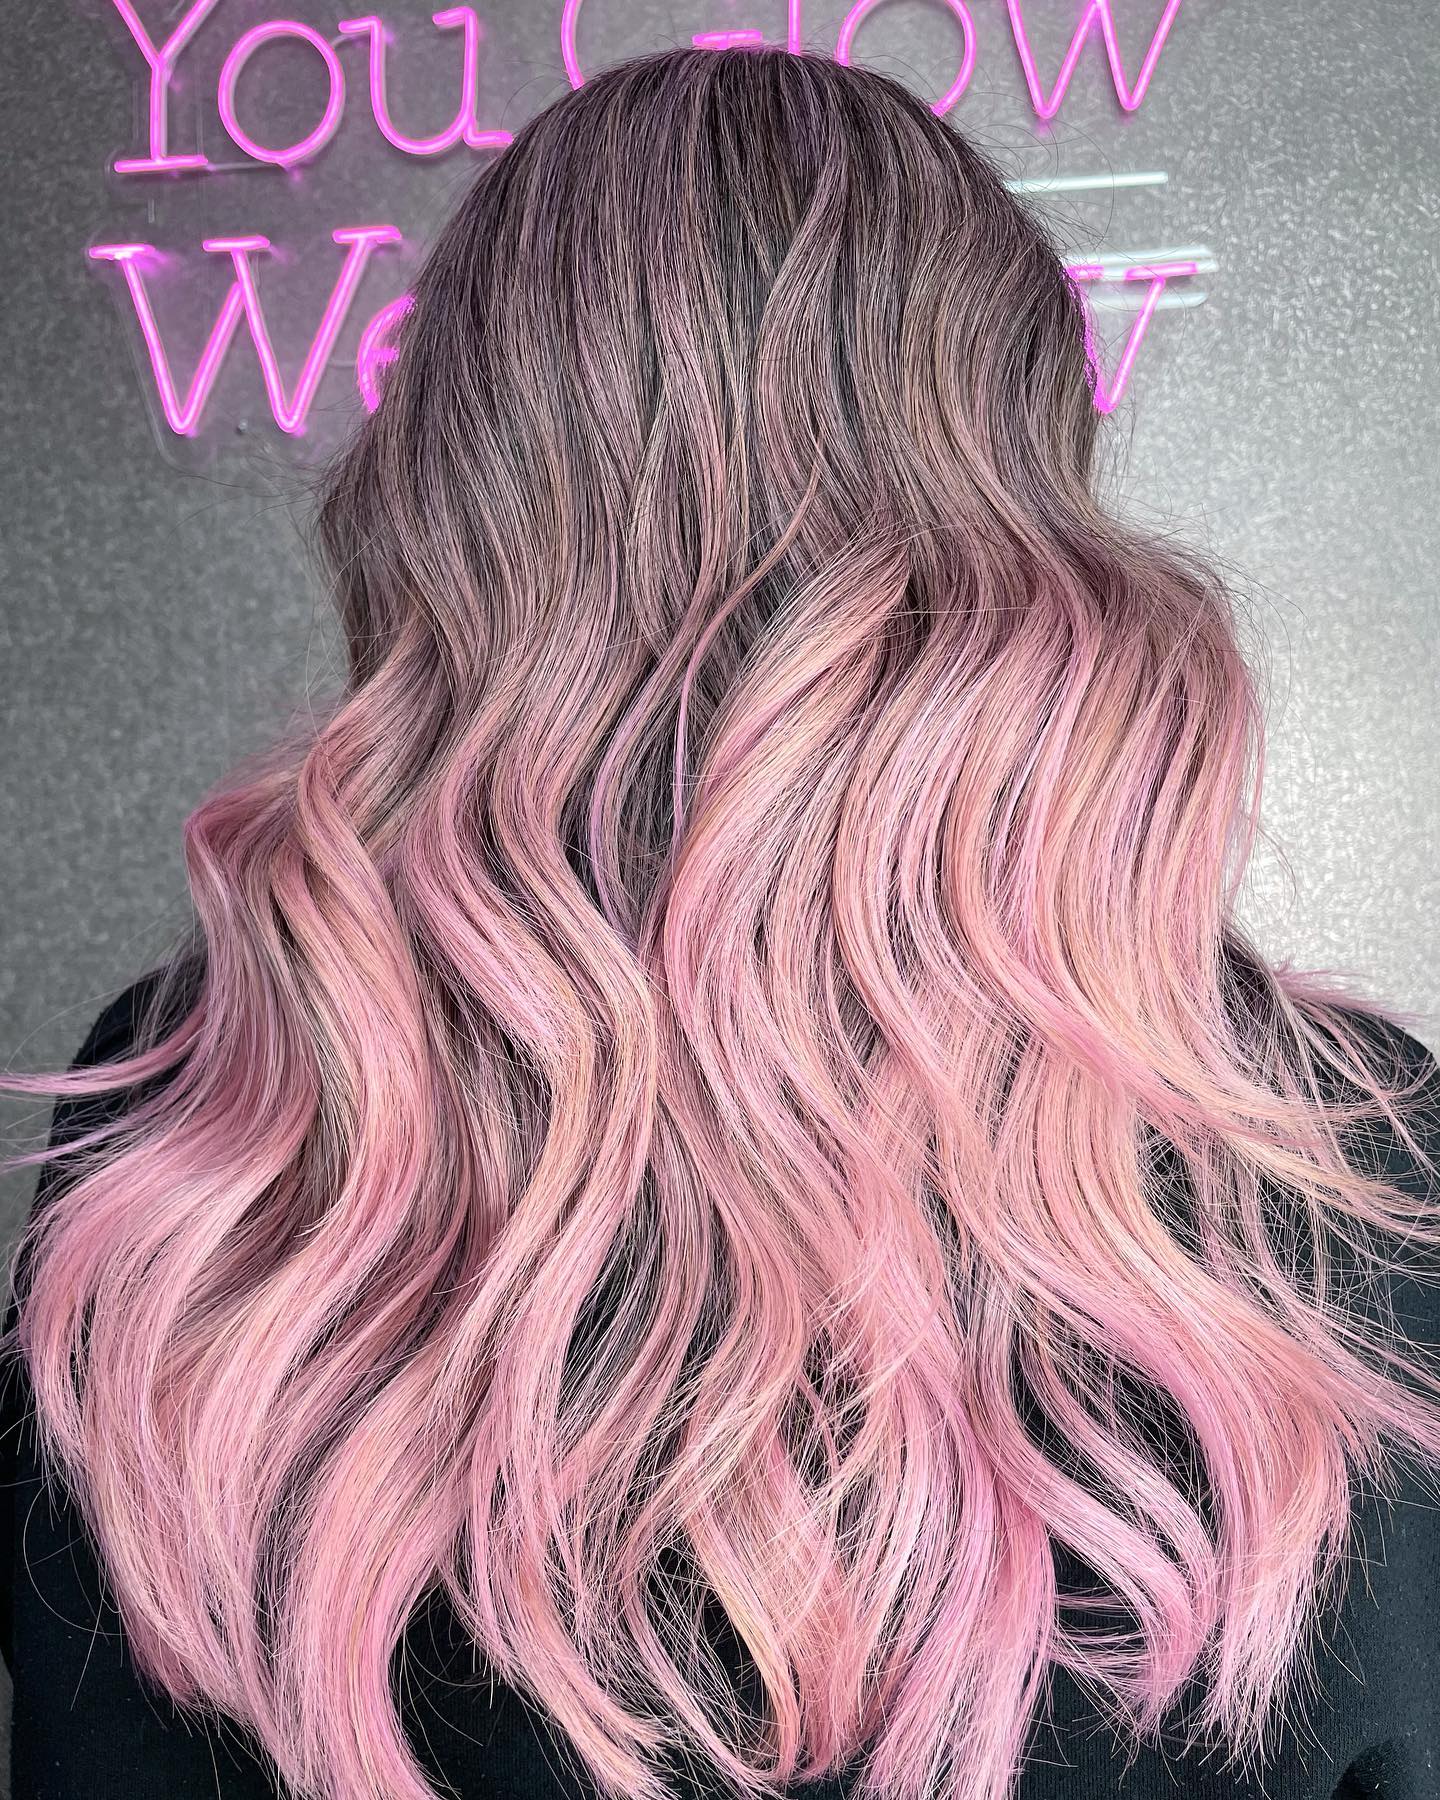 Pastel Pink Highlights on Shoulder Length Blonde Hair